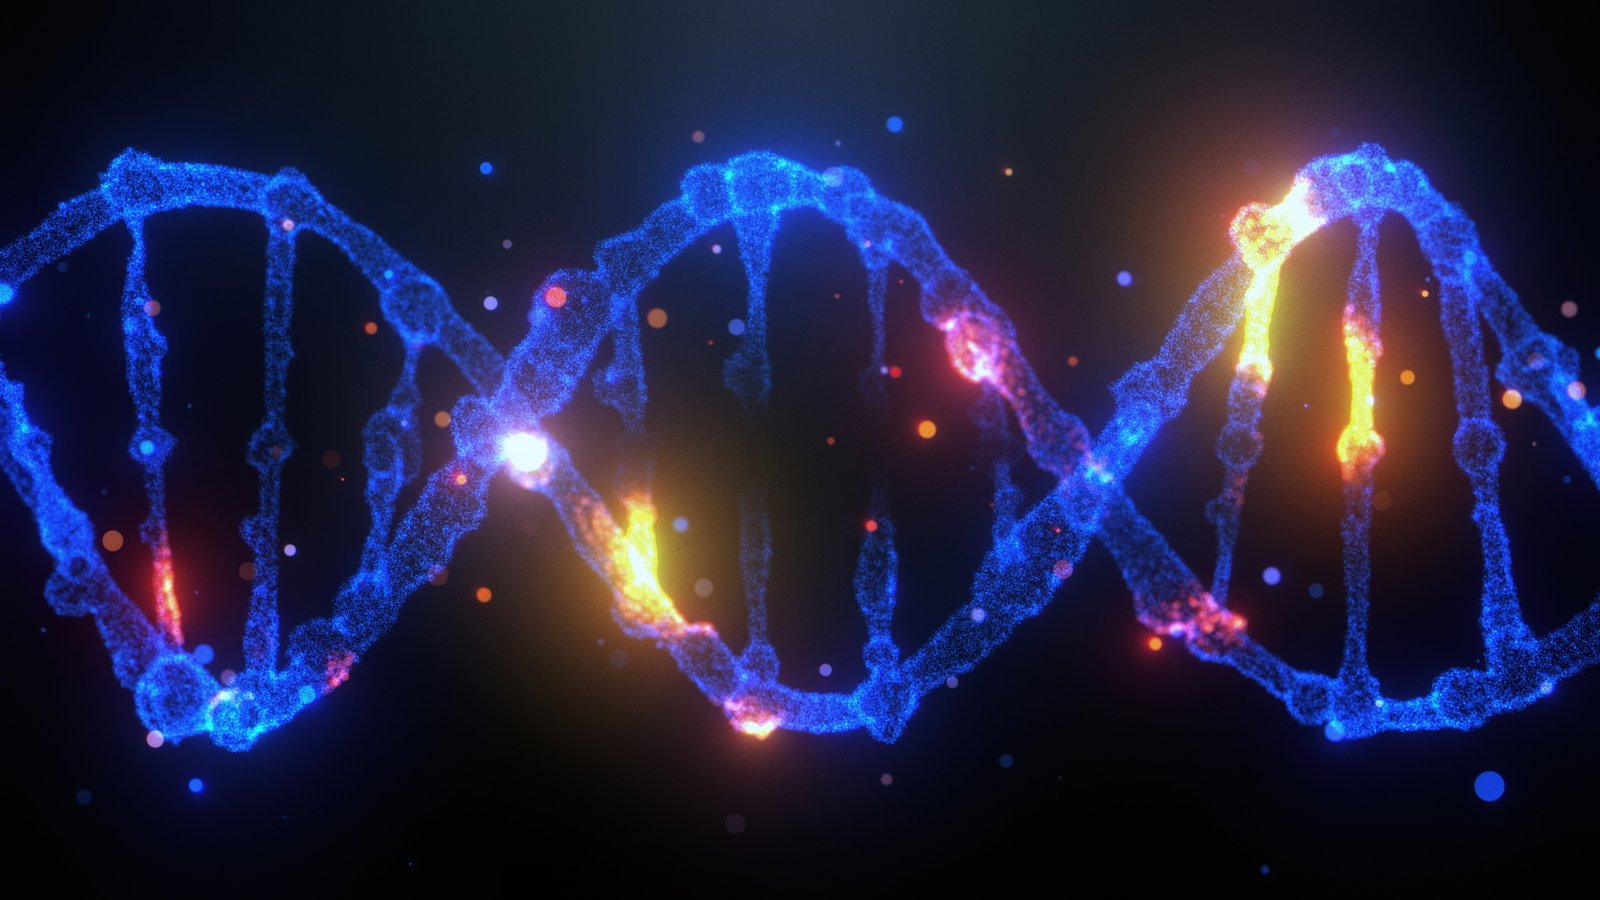 يبدو أن هناك اختراقًا جديدًا يمكن من خلاله التحكم في الجينات البشرية. فقد نجح الباحثون في سويسرا في تشغيل وإيقاف تشغيل الجينات البشرية باستخدام تيارات كهربائية من إبر الوخز الطبية.